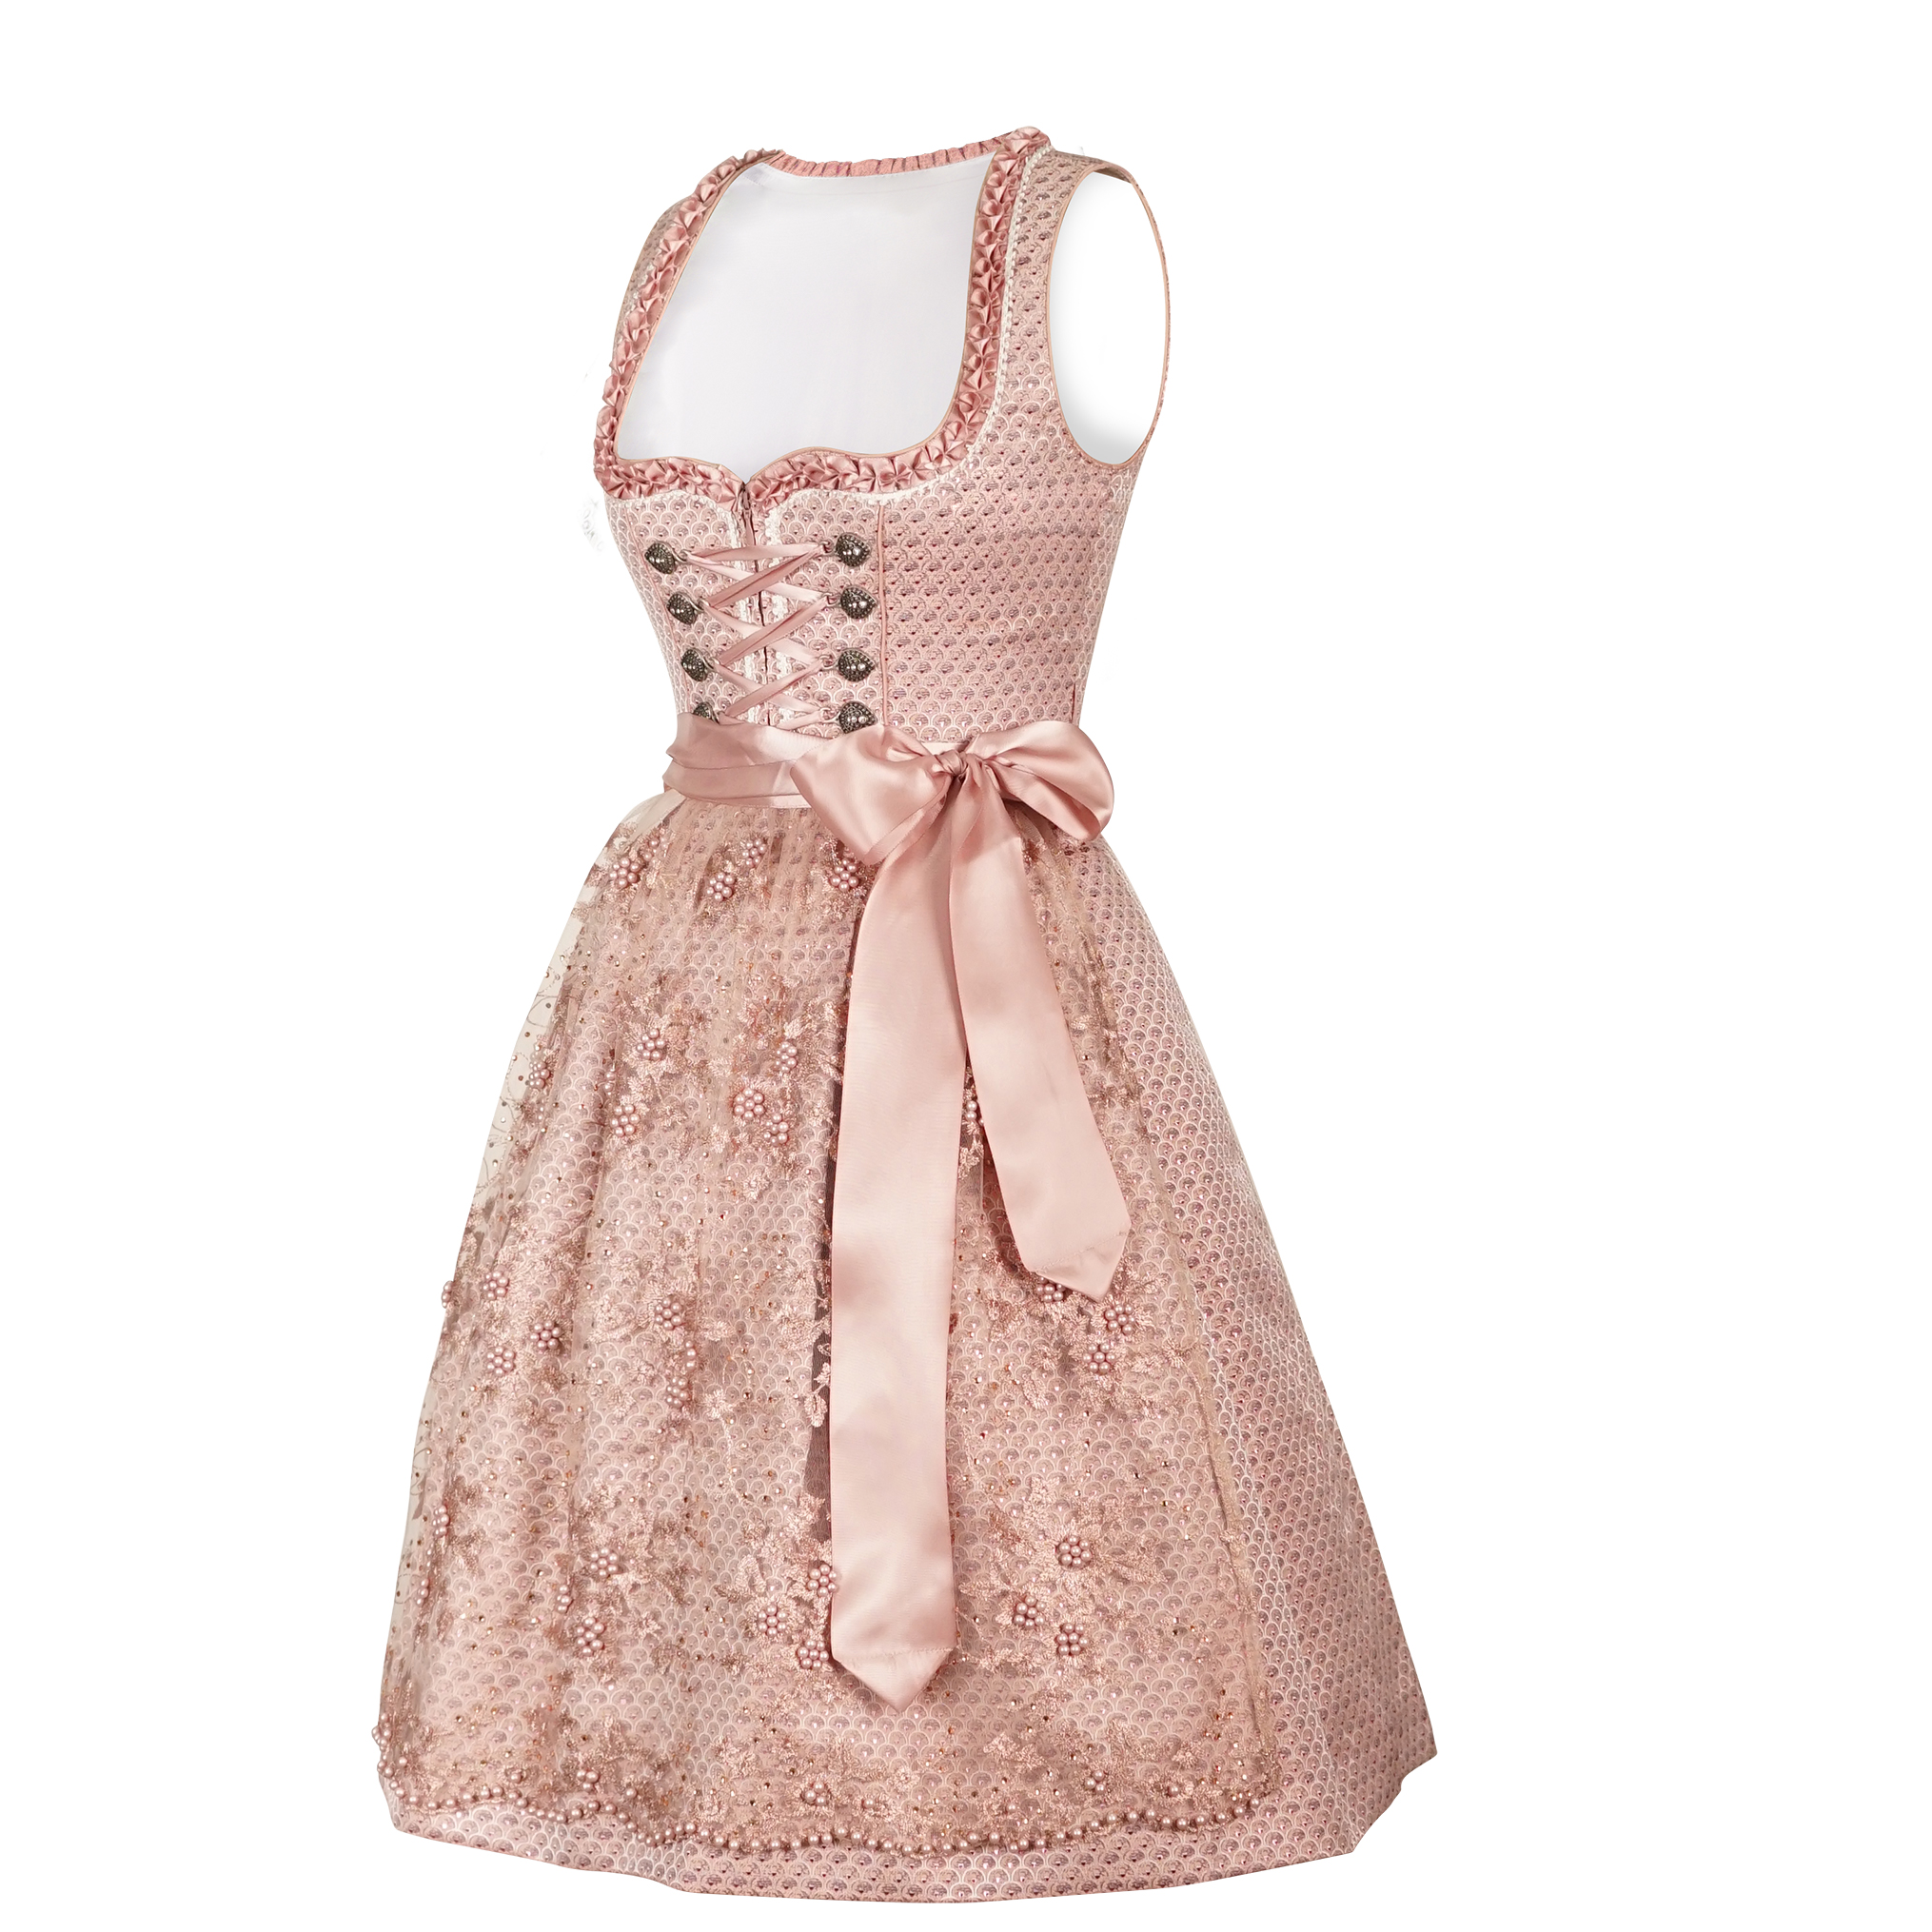 a exquisite pink dirndl dress